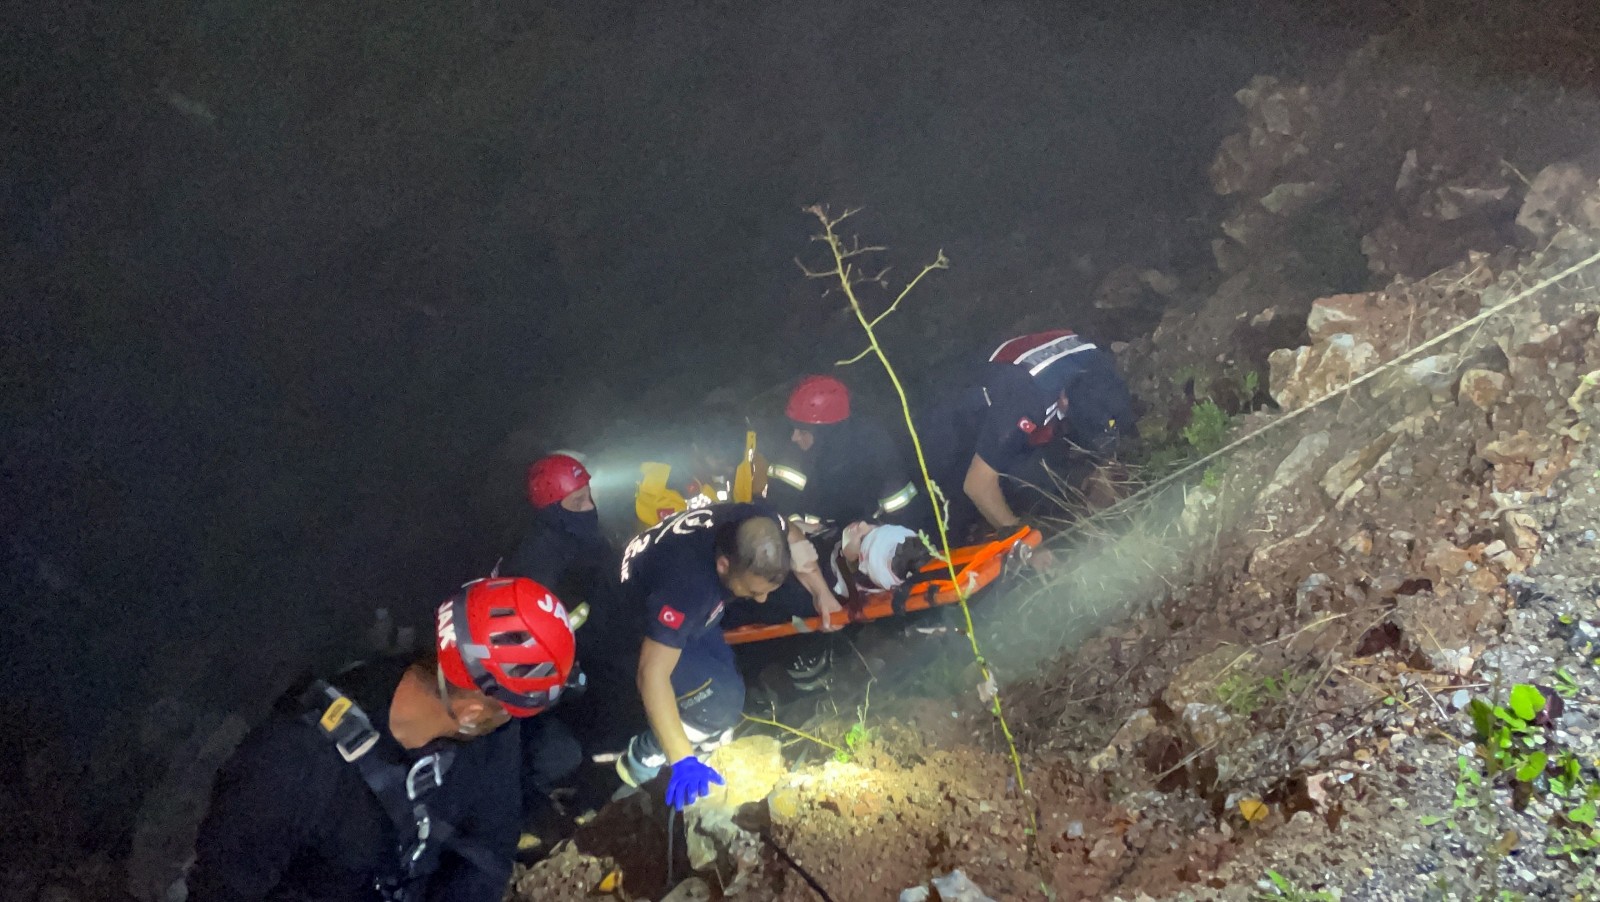 UTV ile 30 metrelik uçuruma düşen 2 kişi 1,5 saatlik çalışmayla kurtarıldı #kocaeli